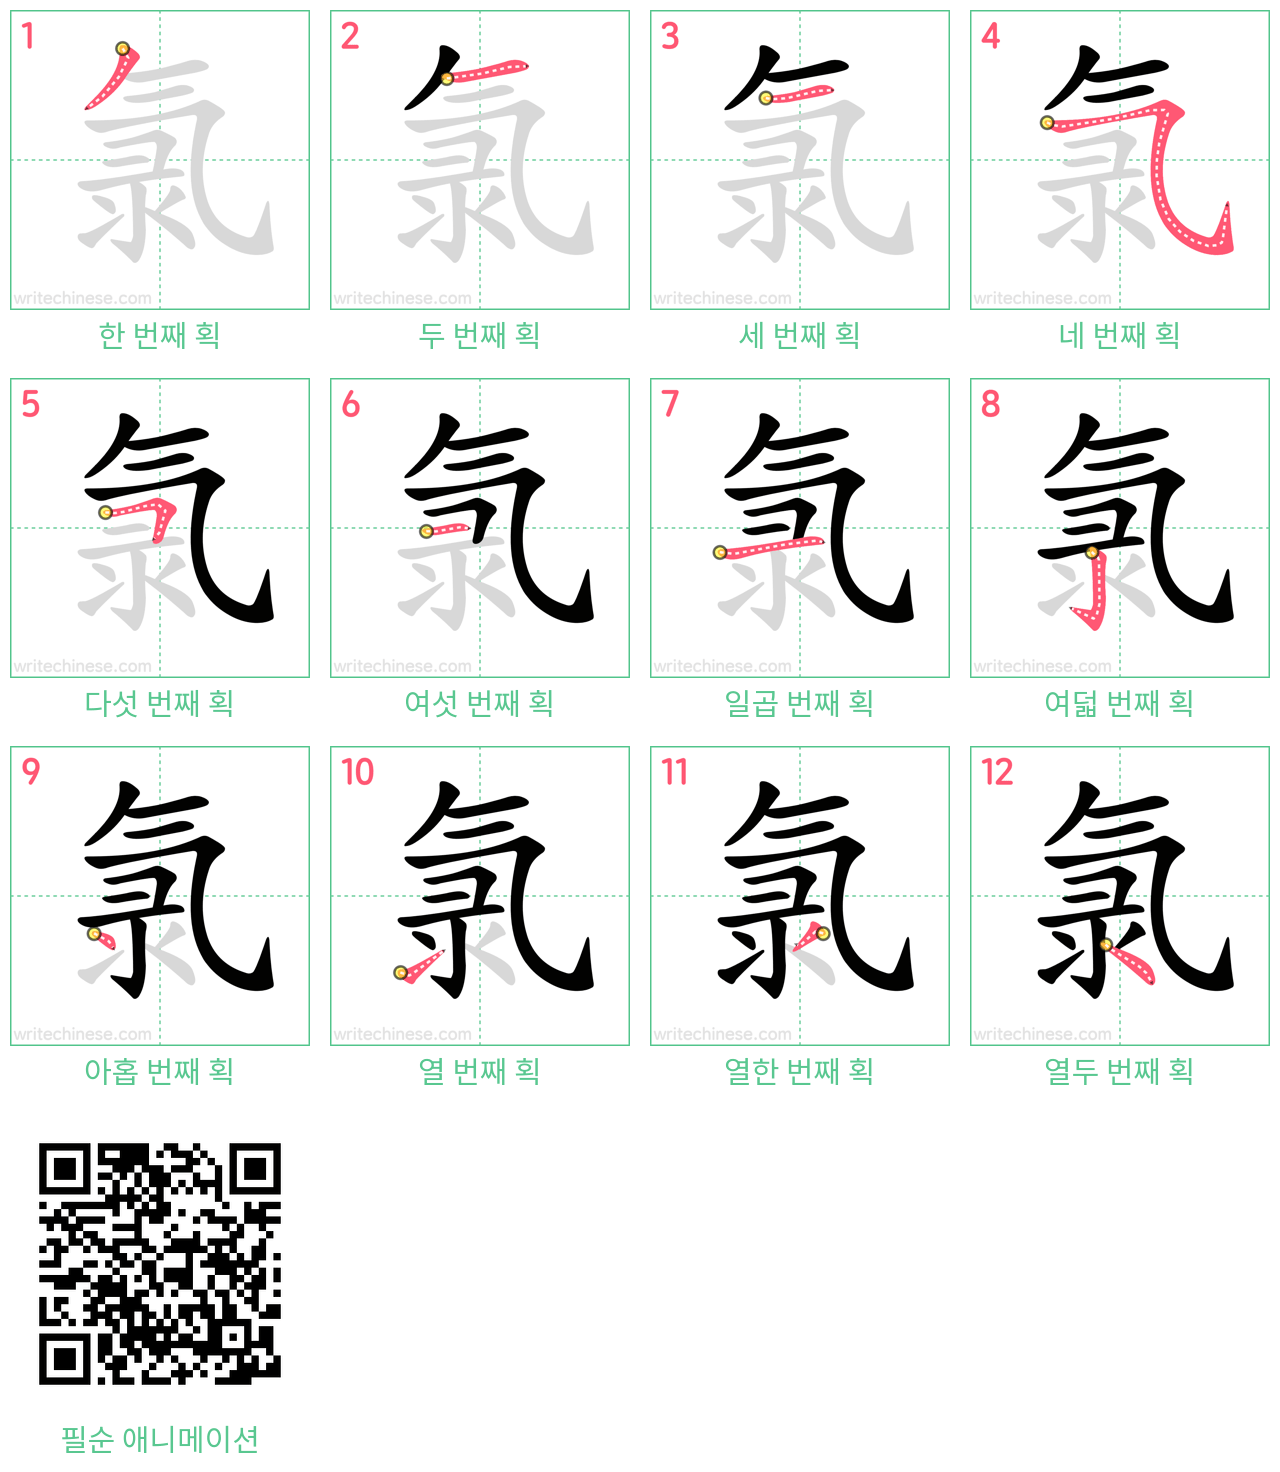 氯 step-by-step stroke order diagrams